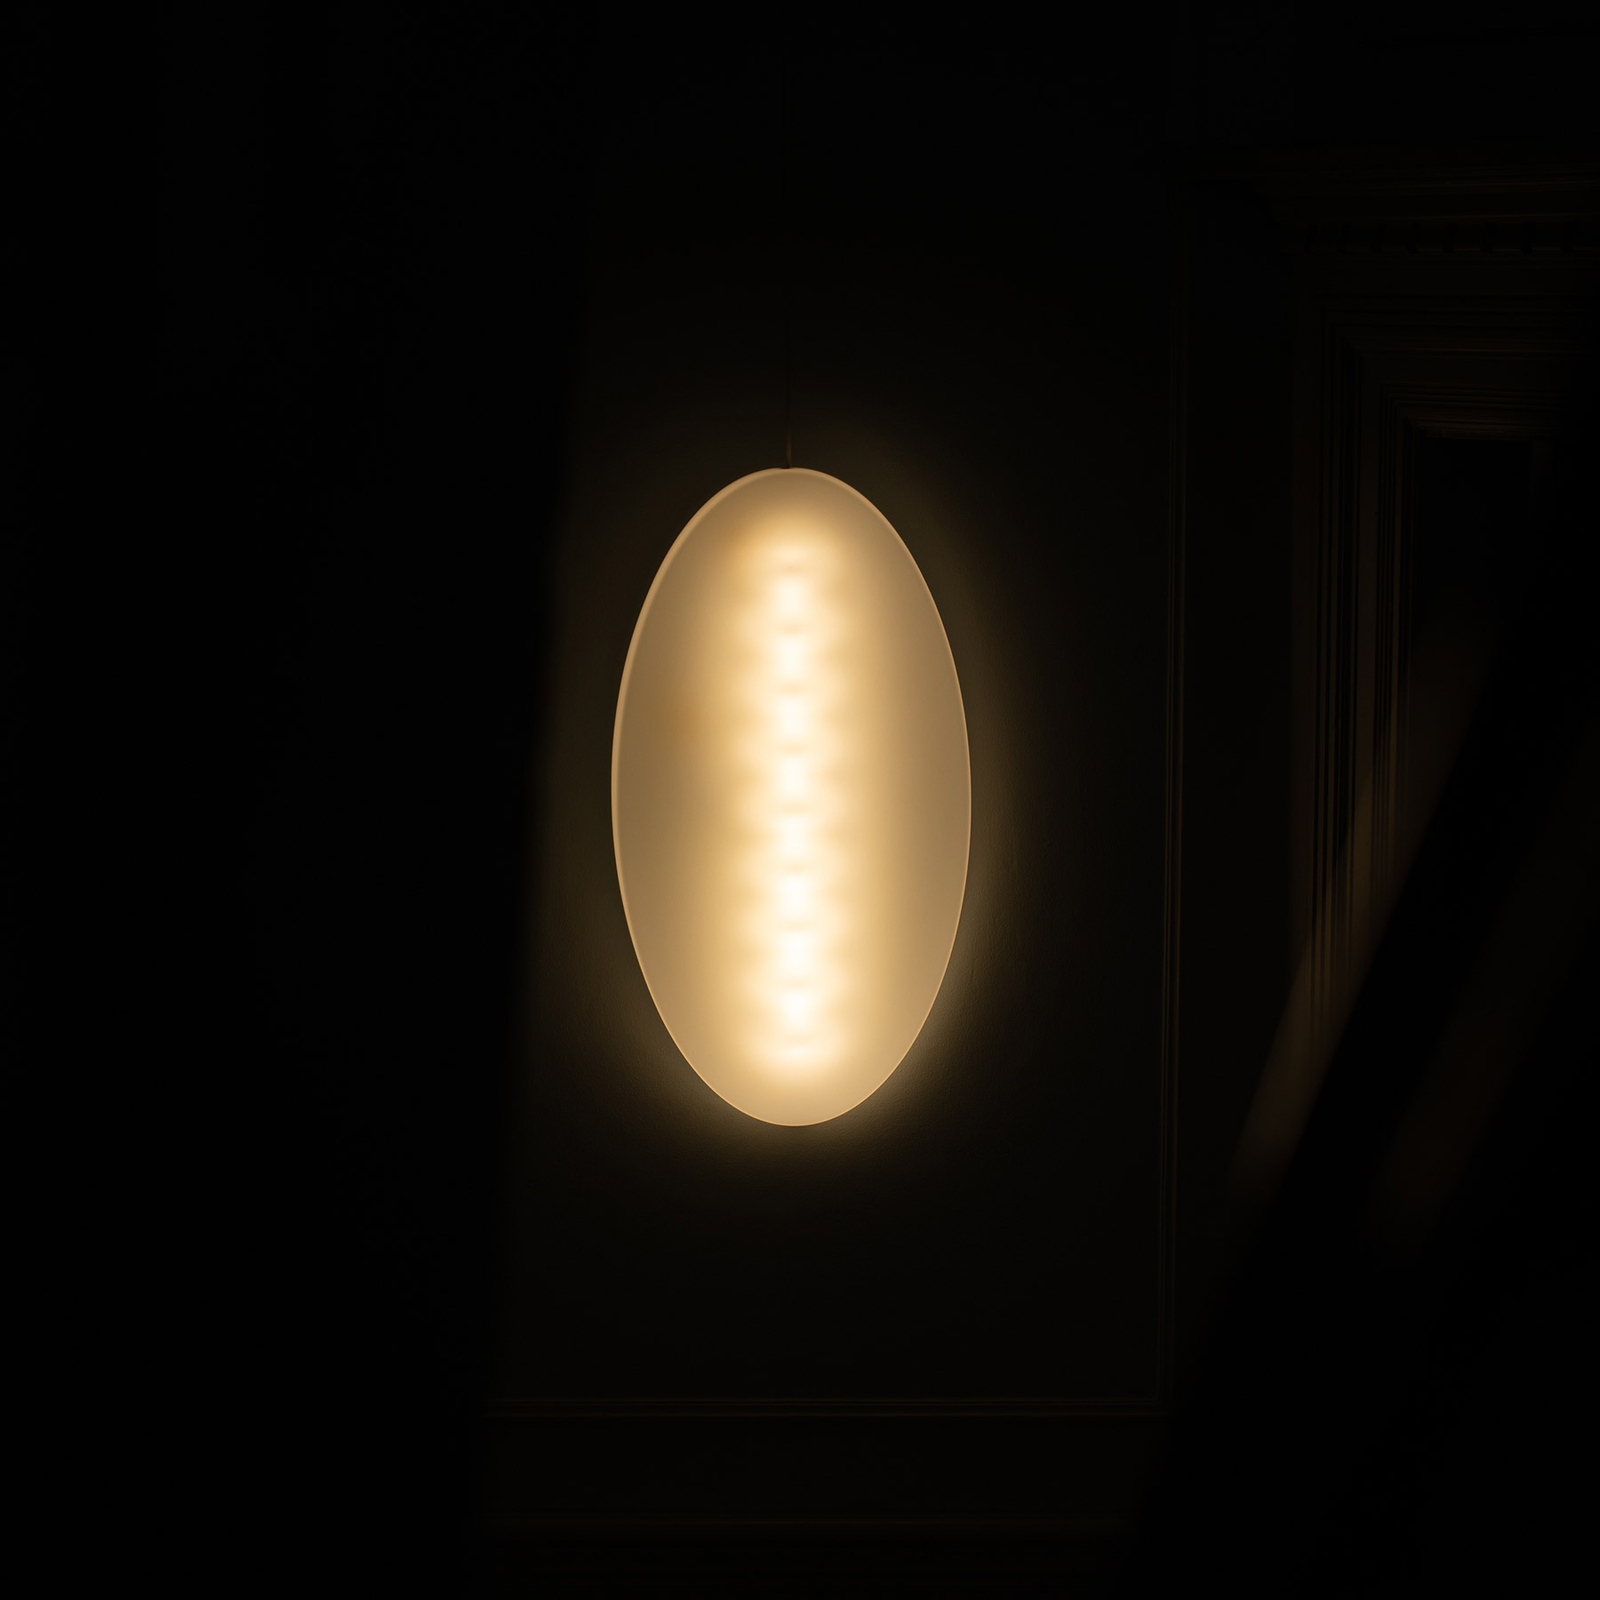 Foscarini MyLight Superficie LED wall light, 75 cm